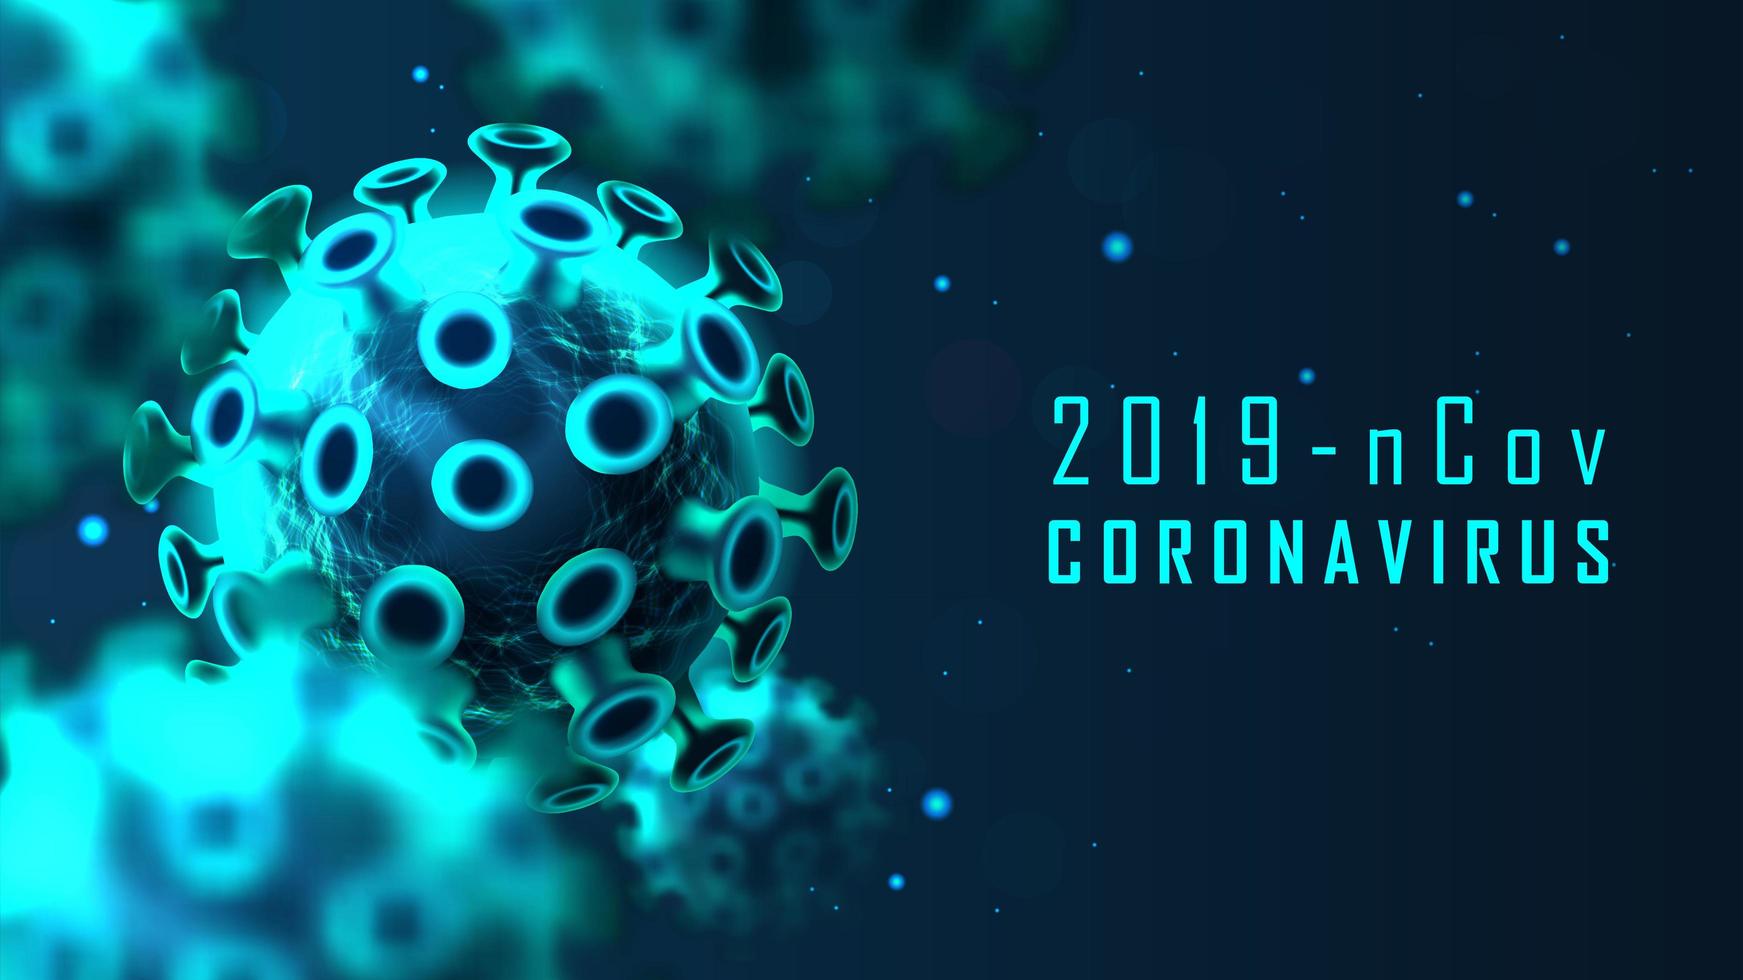 banner de célula de coronavírus azul brilhante vetor